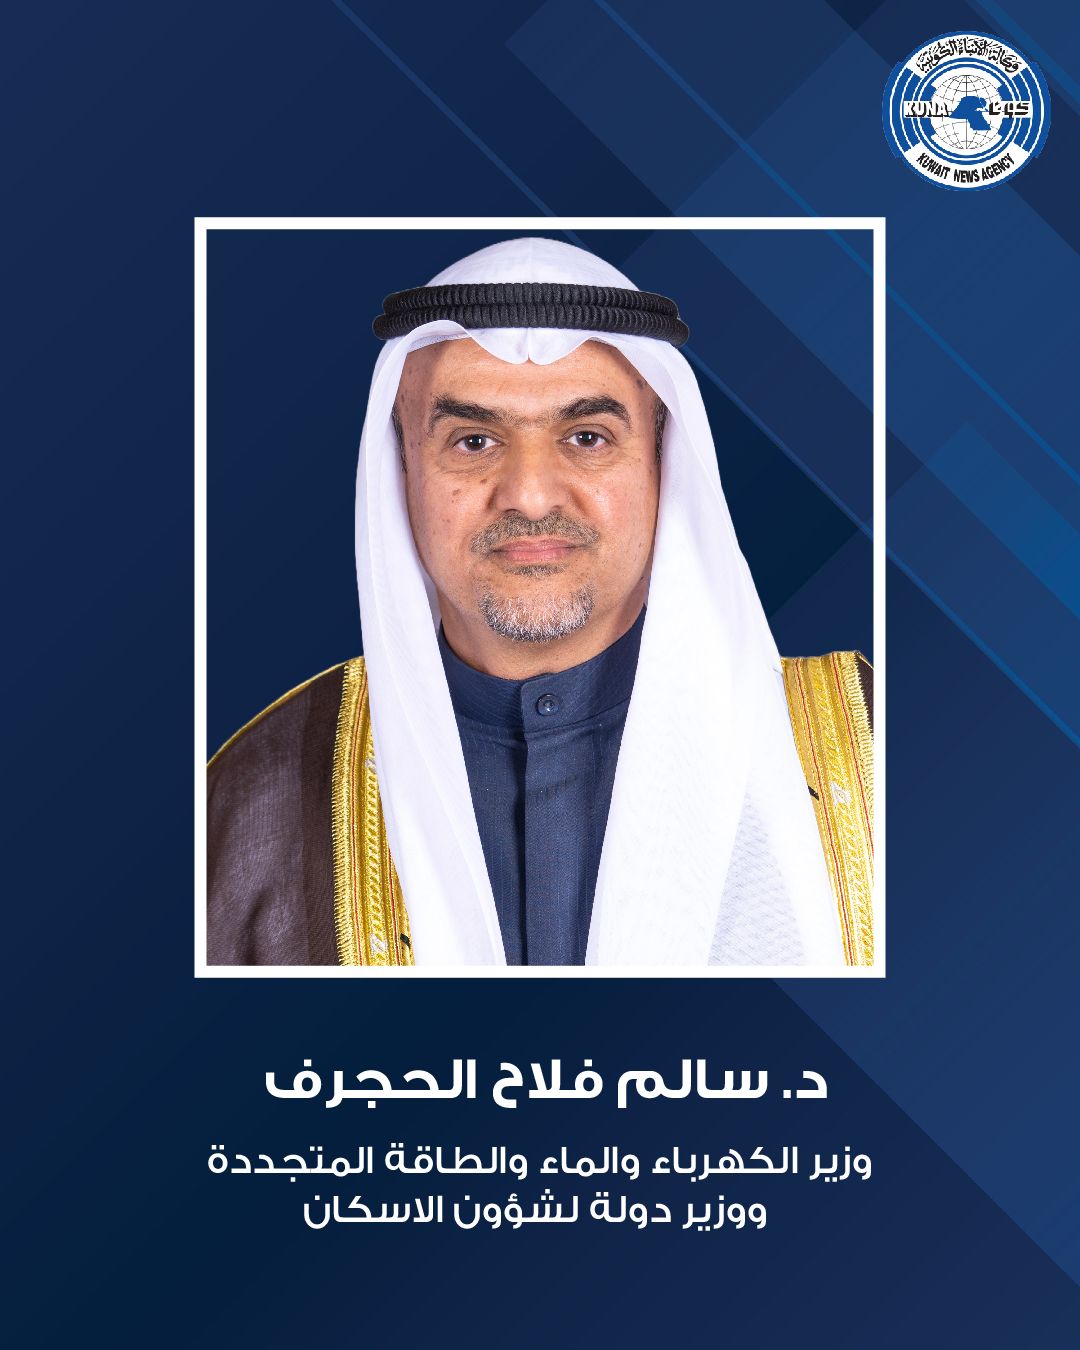 وزير الكهرباء والماء والطاقة المتجددة وزير الدولة لشؤون الإسكان الدكتور سالم الحجرف